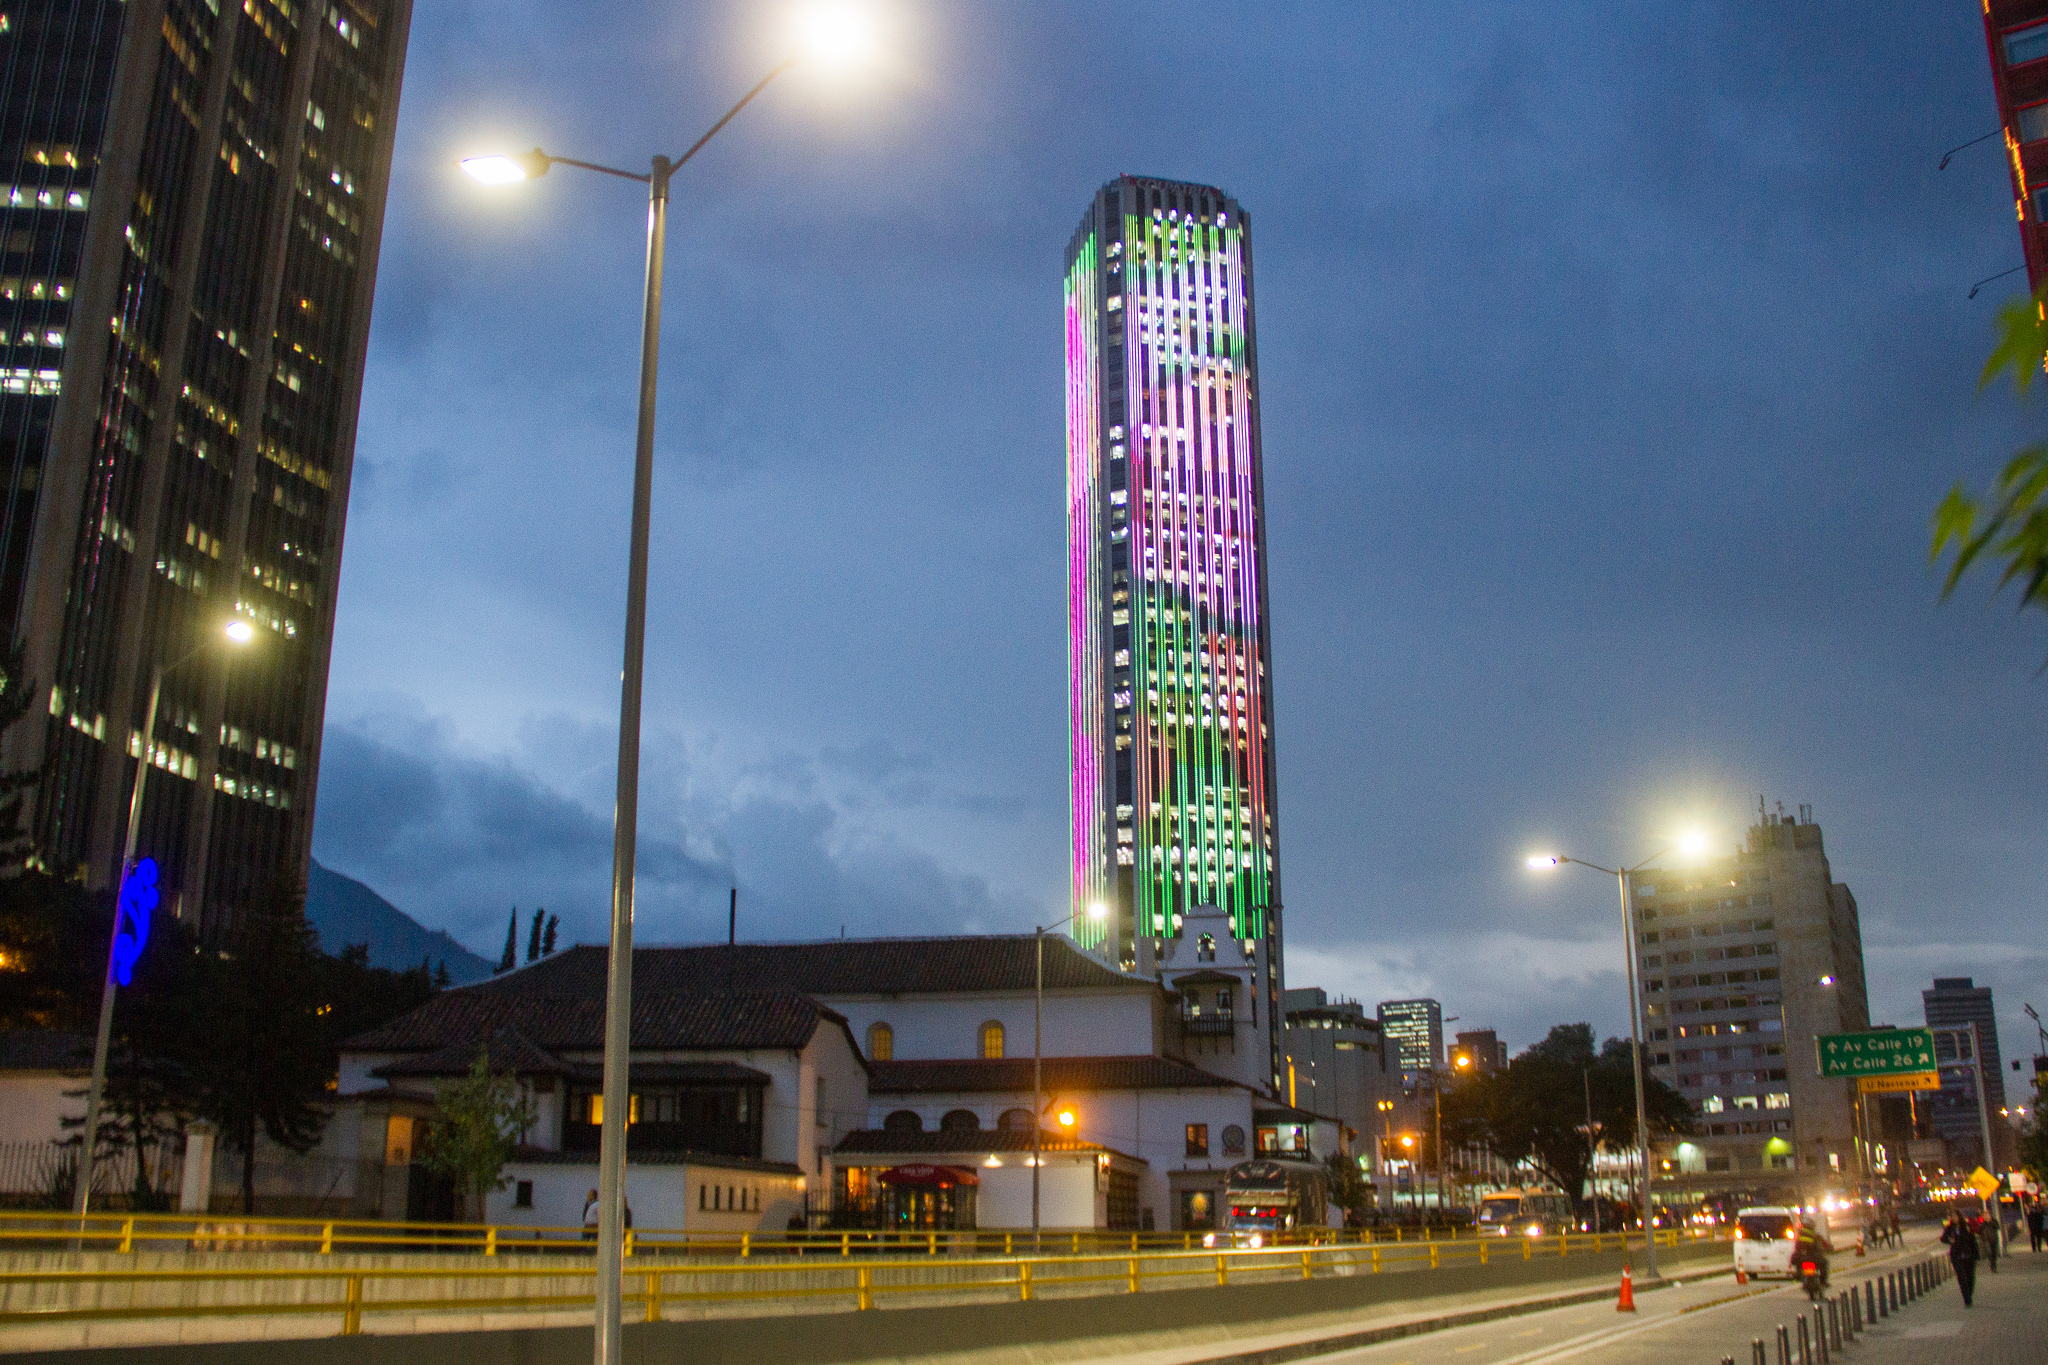 5 lugares turísticos de Bogotá para visitar este 2021